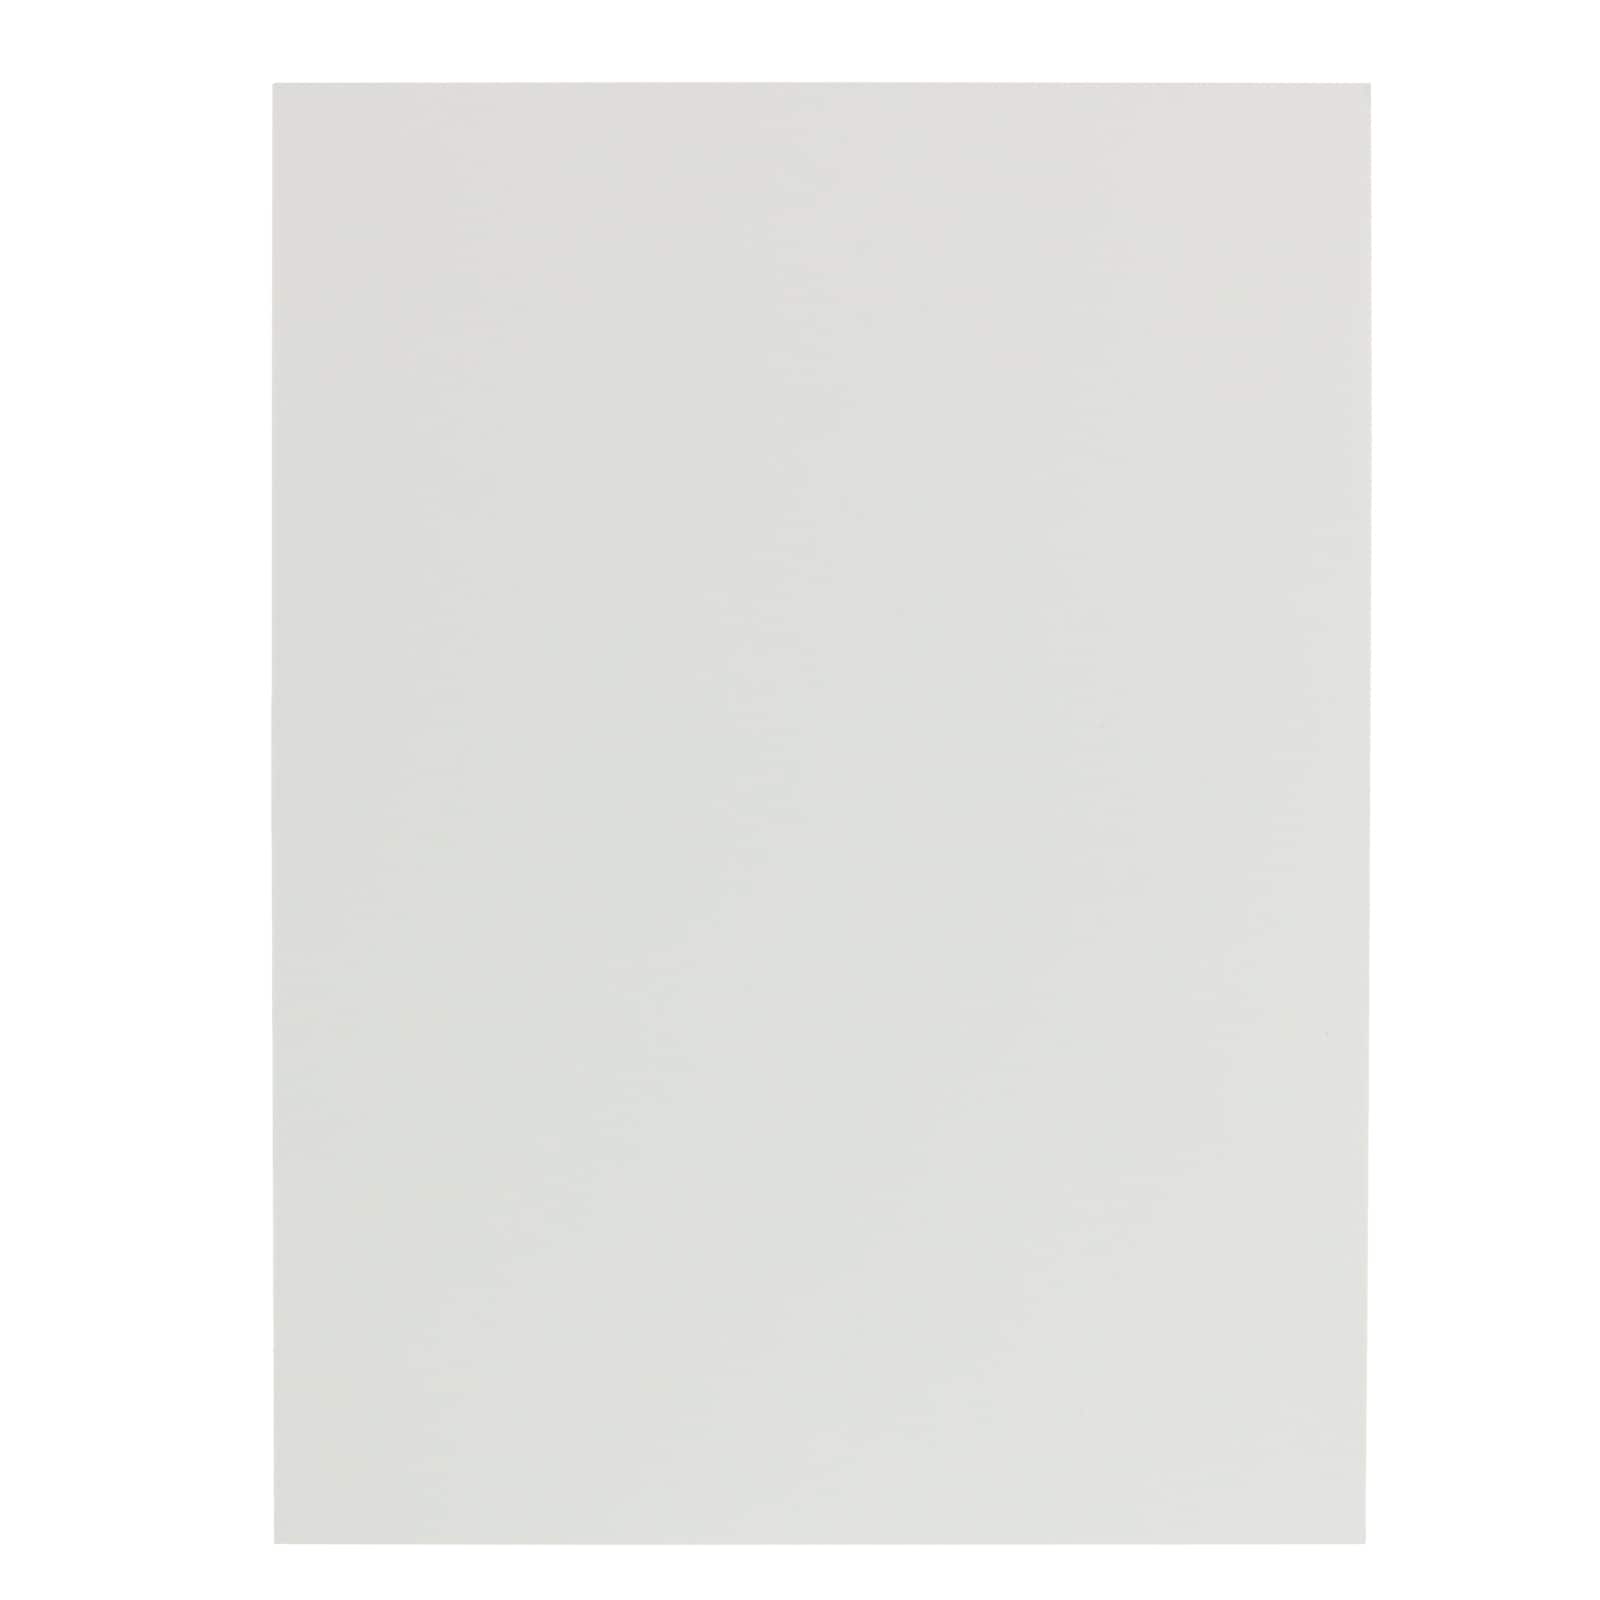 Marker Paper Pad by Artist&#x27;s Loft&#x2122;, 9&#x22; x 12&#x22;